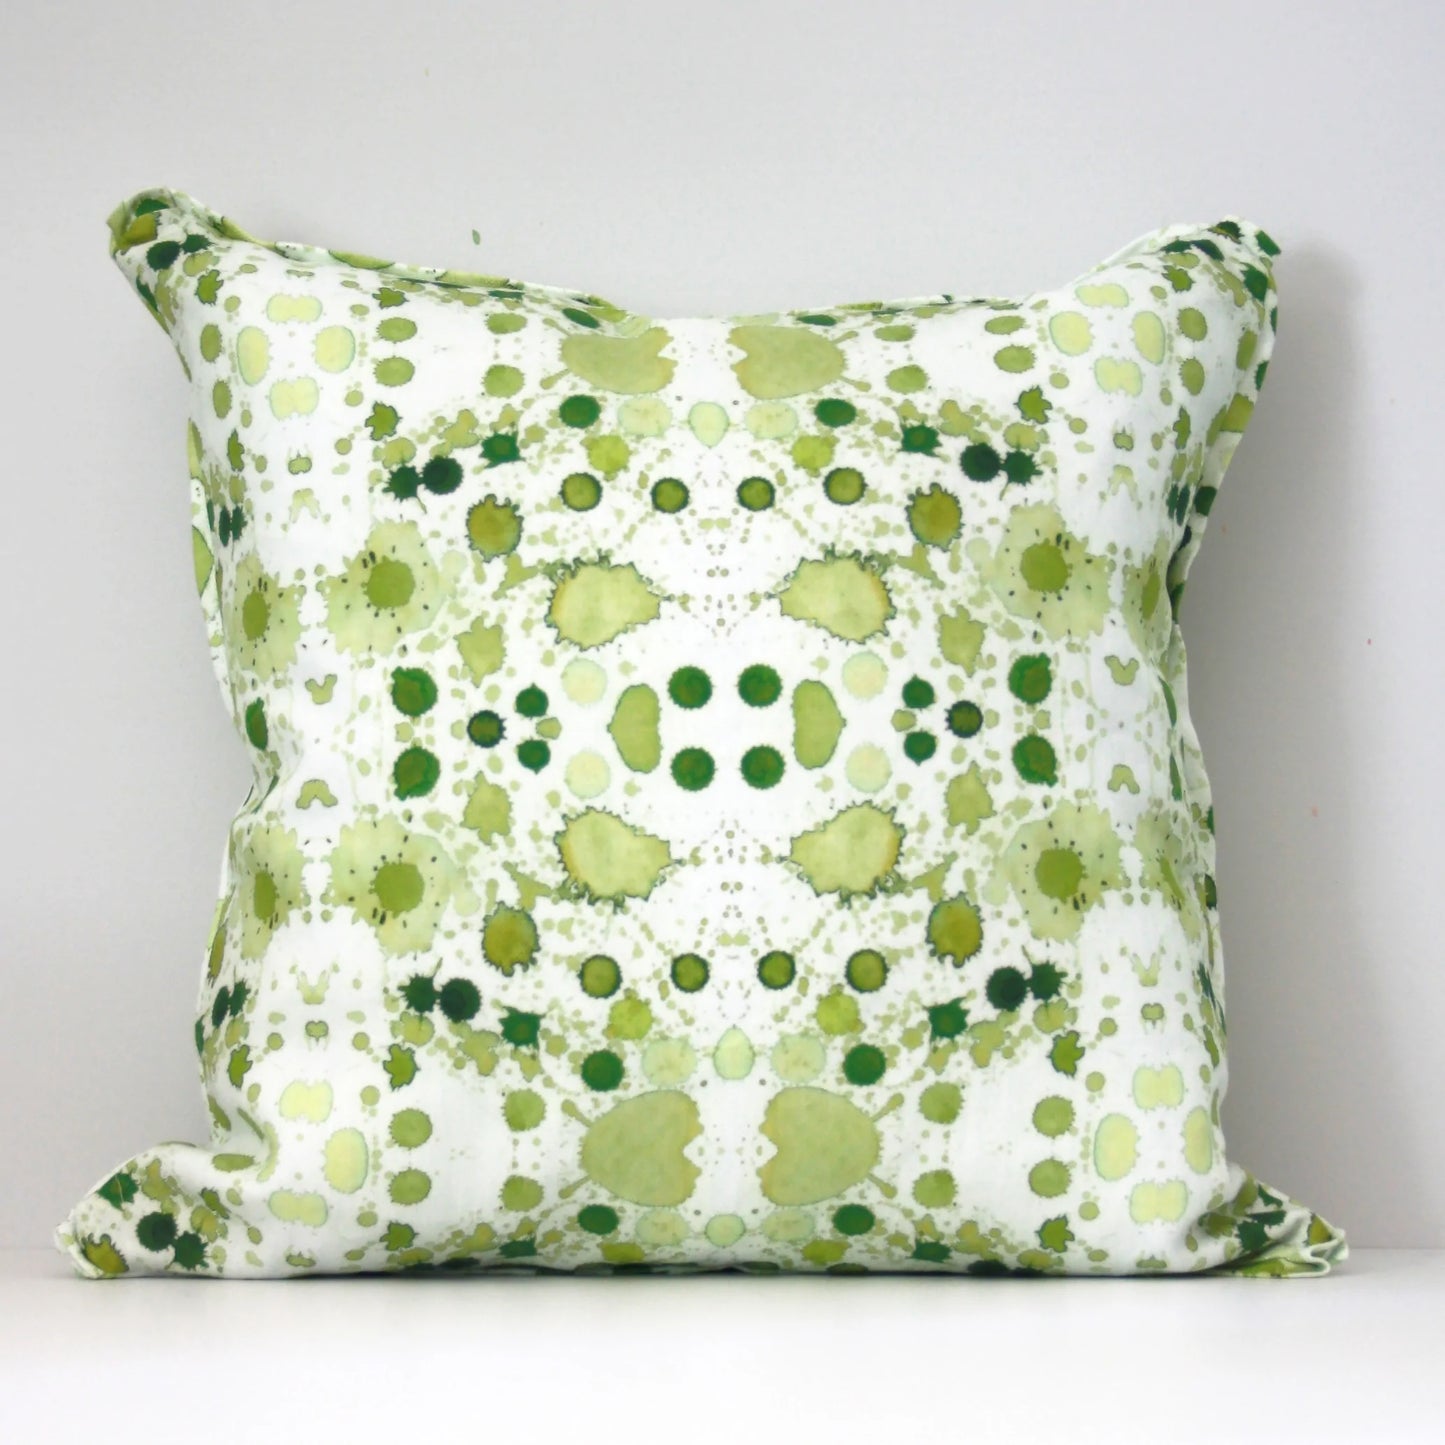 Splatter Pillow in Green with Envy - SAMPLE